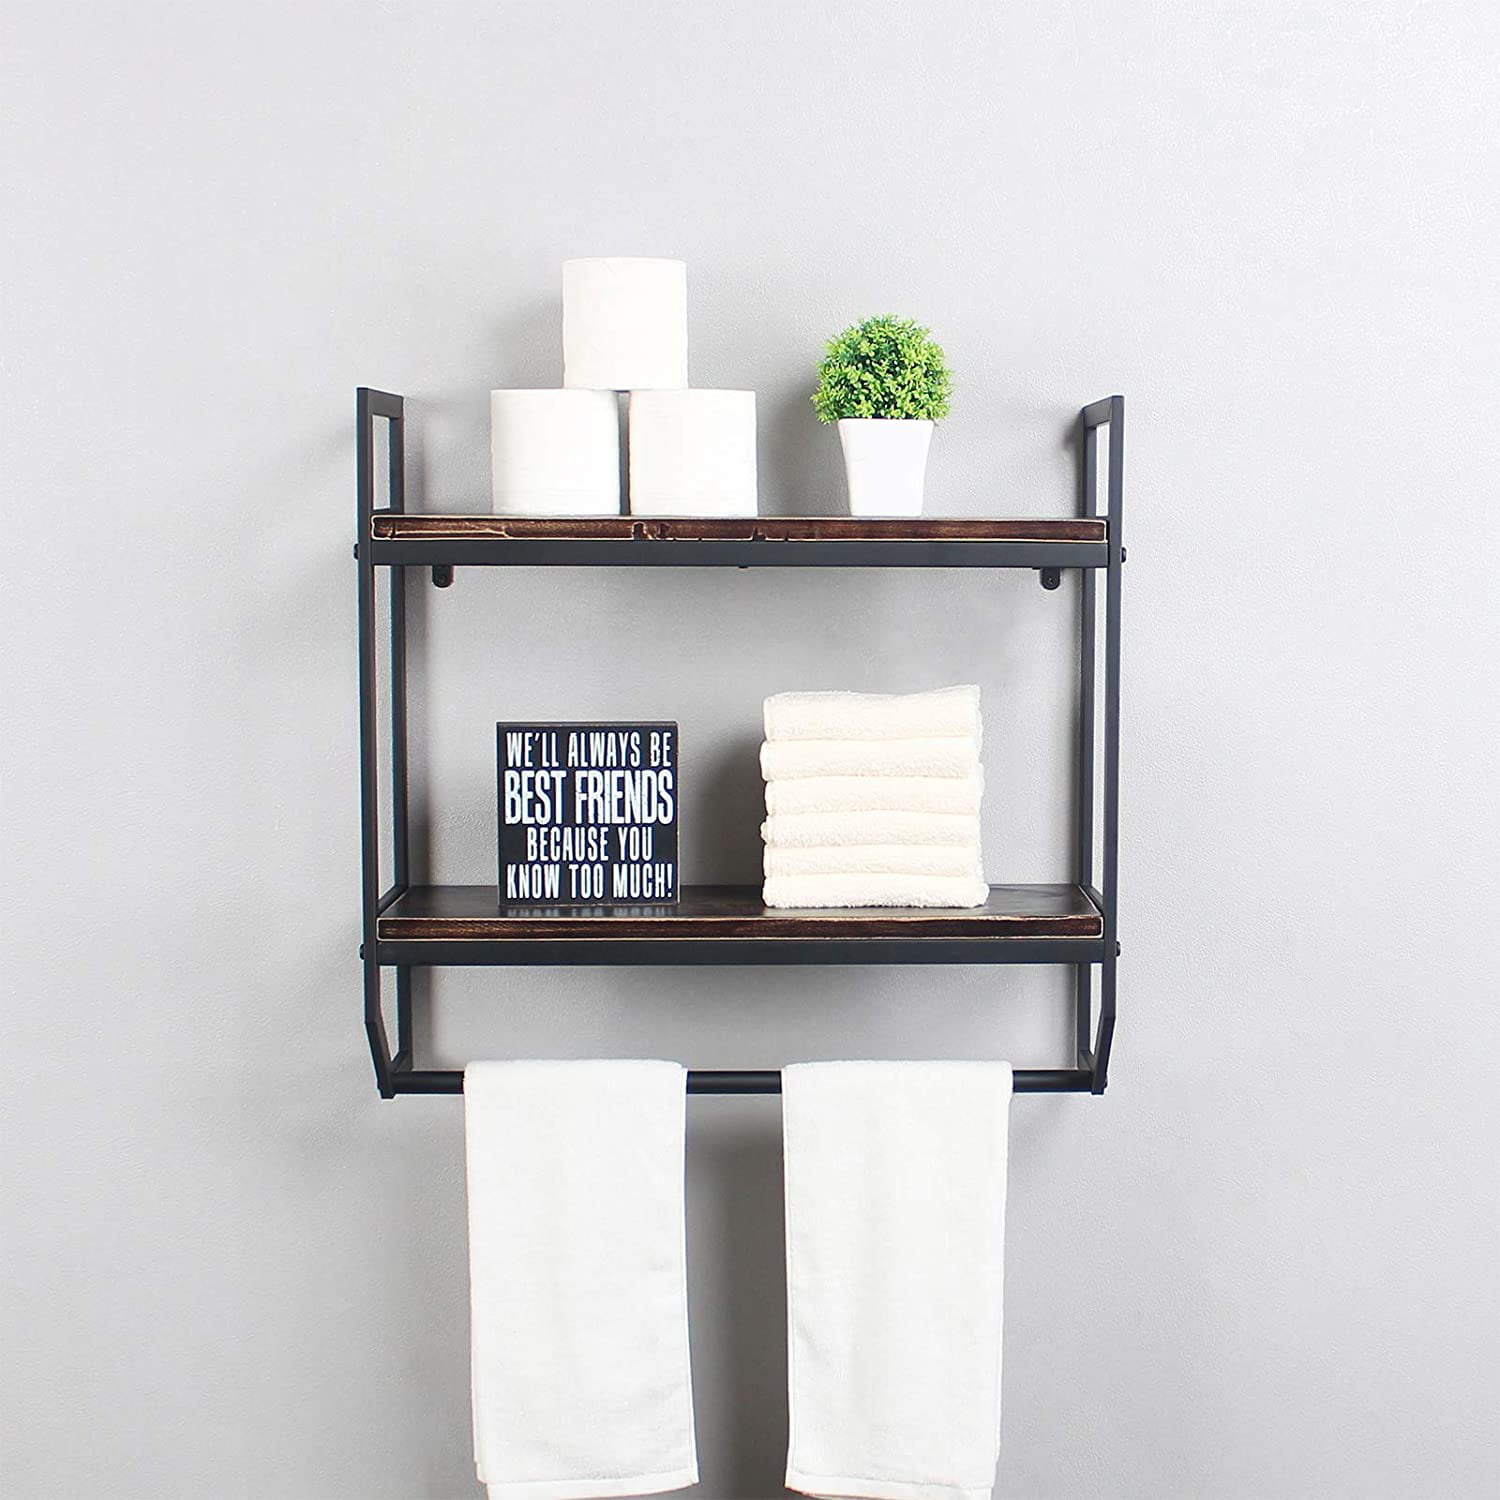 LOKO 2-Tier Bathroom Towel Rack with Shelf, Industrial Over The